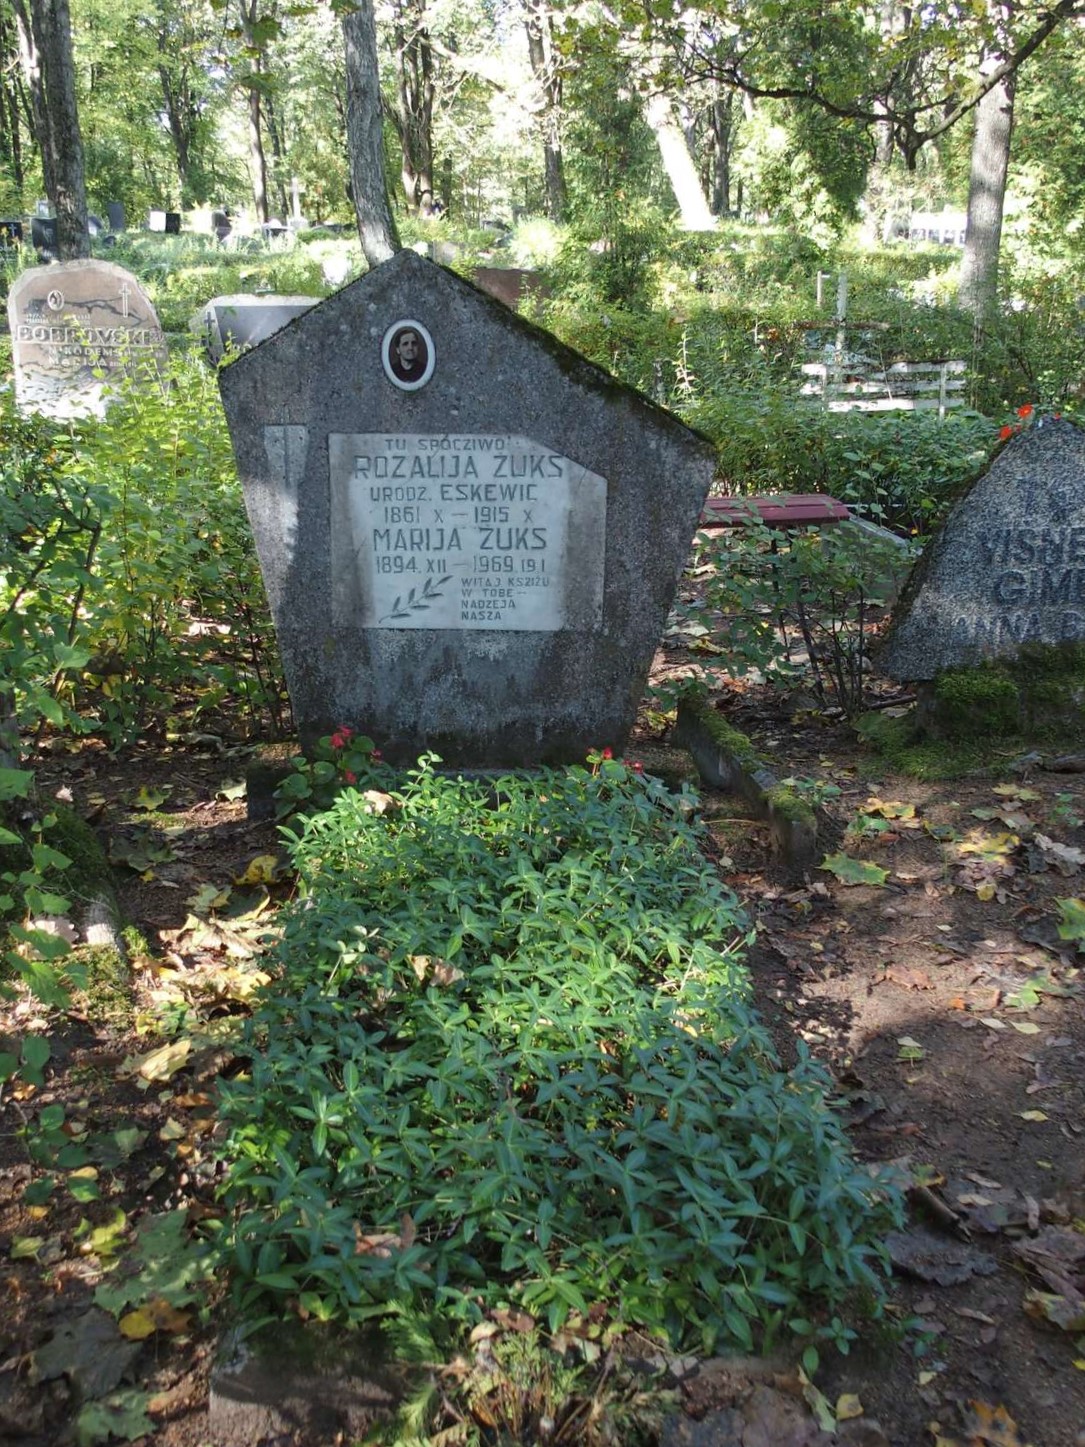 Tombstone of Maria Żuks and Rozalia Żuks